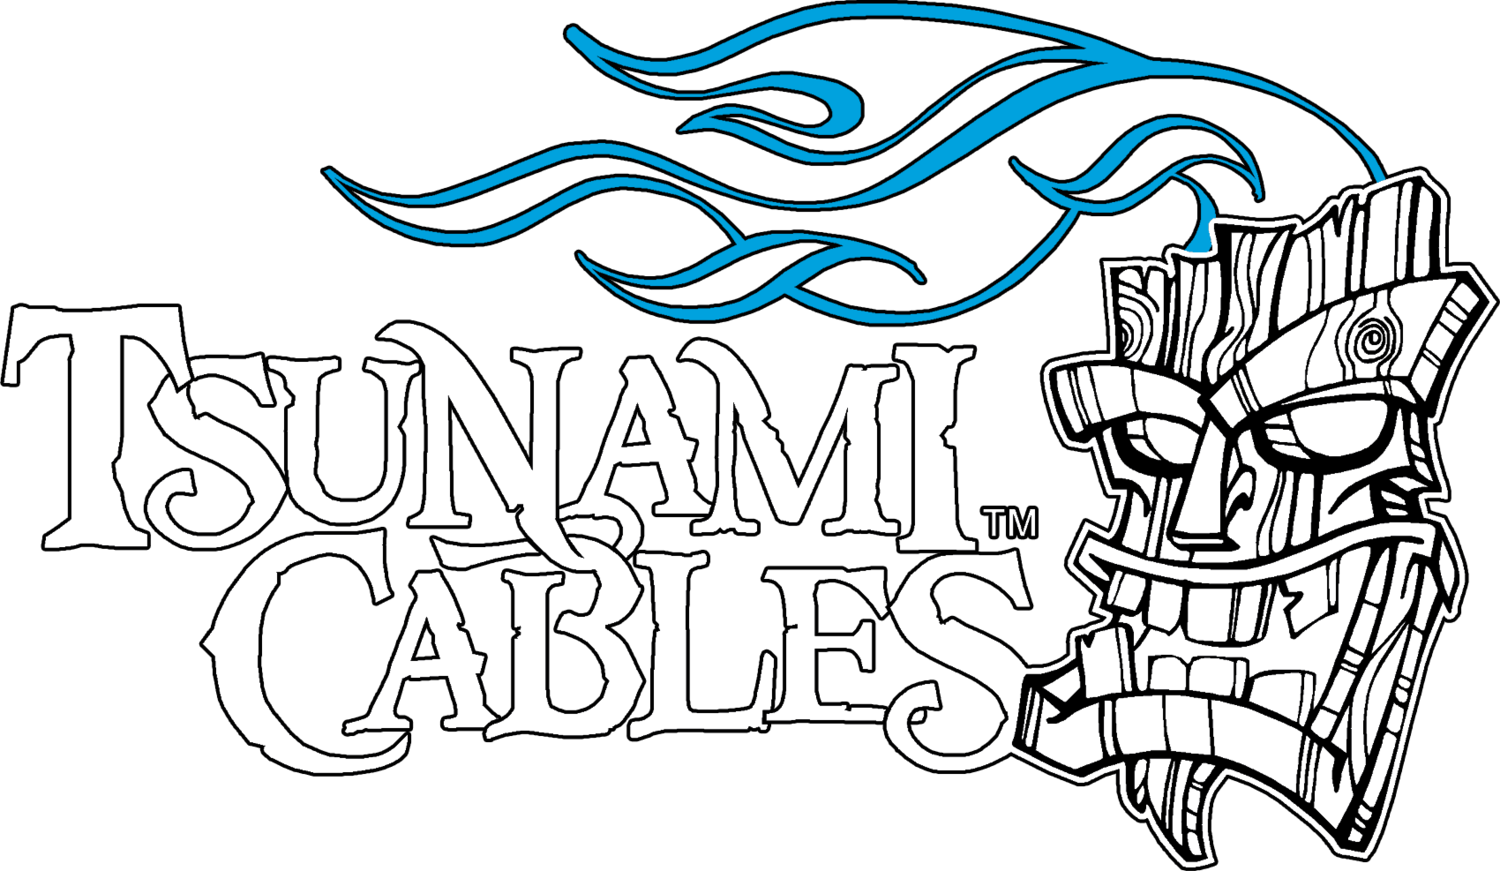 Tsunami Cables